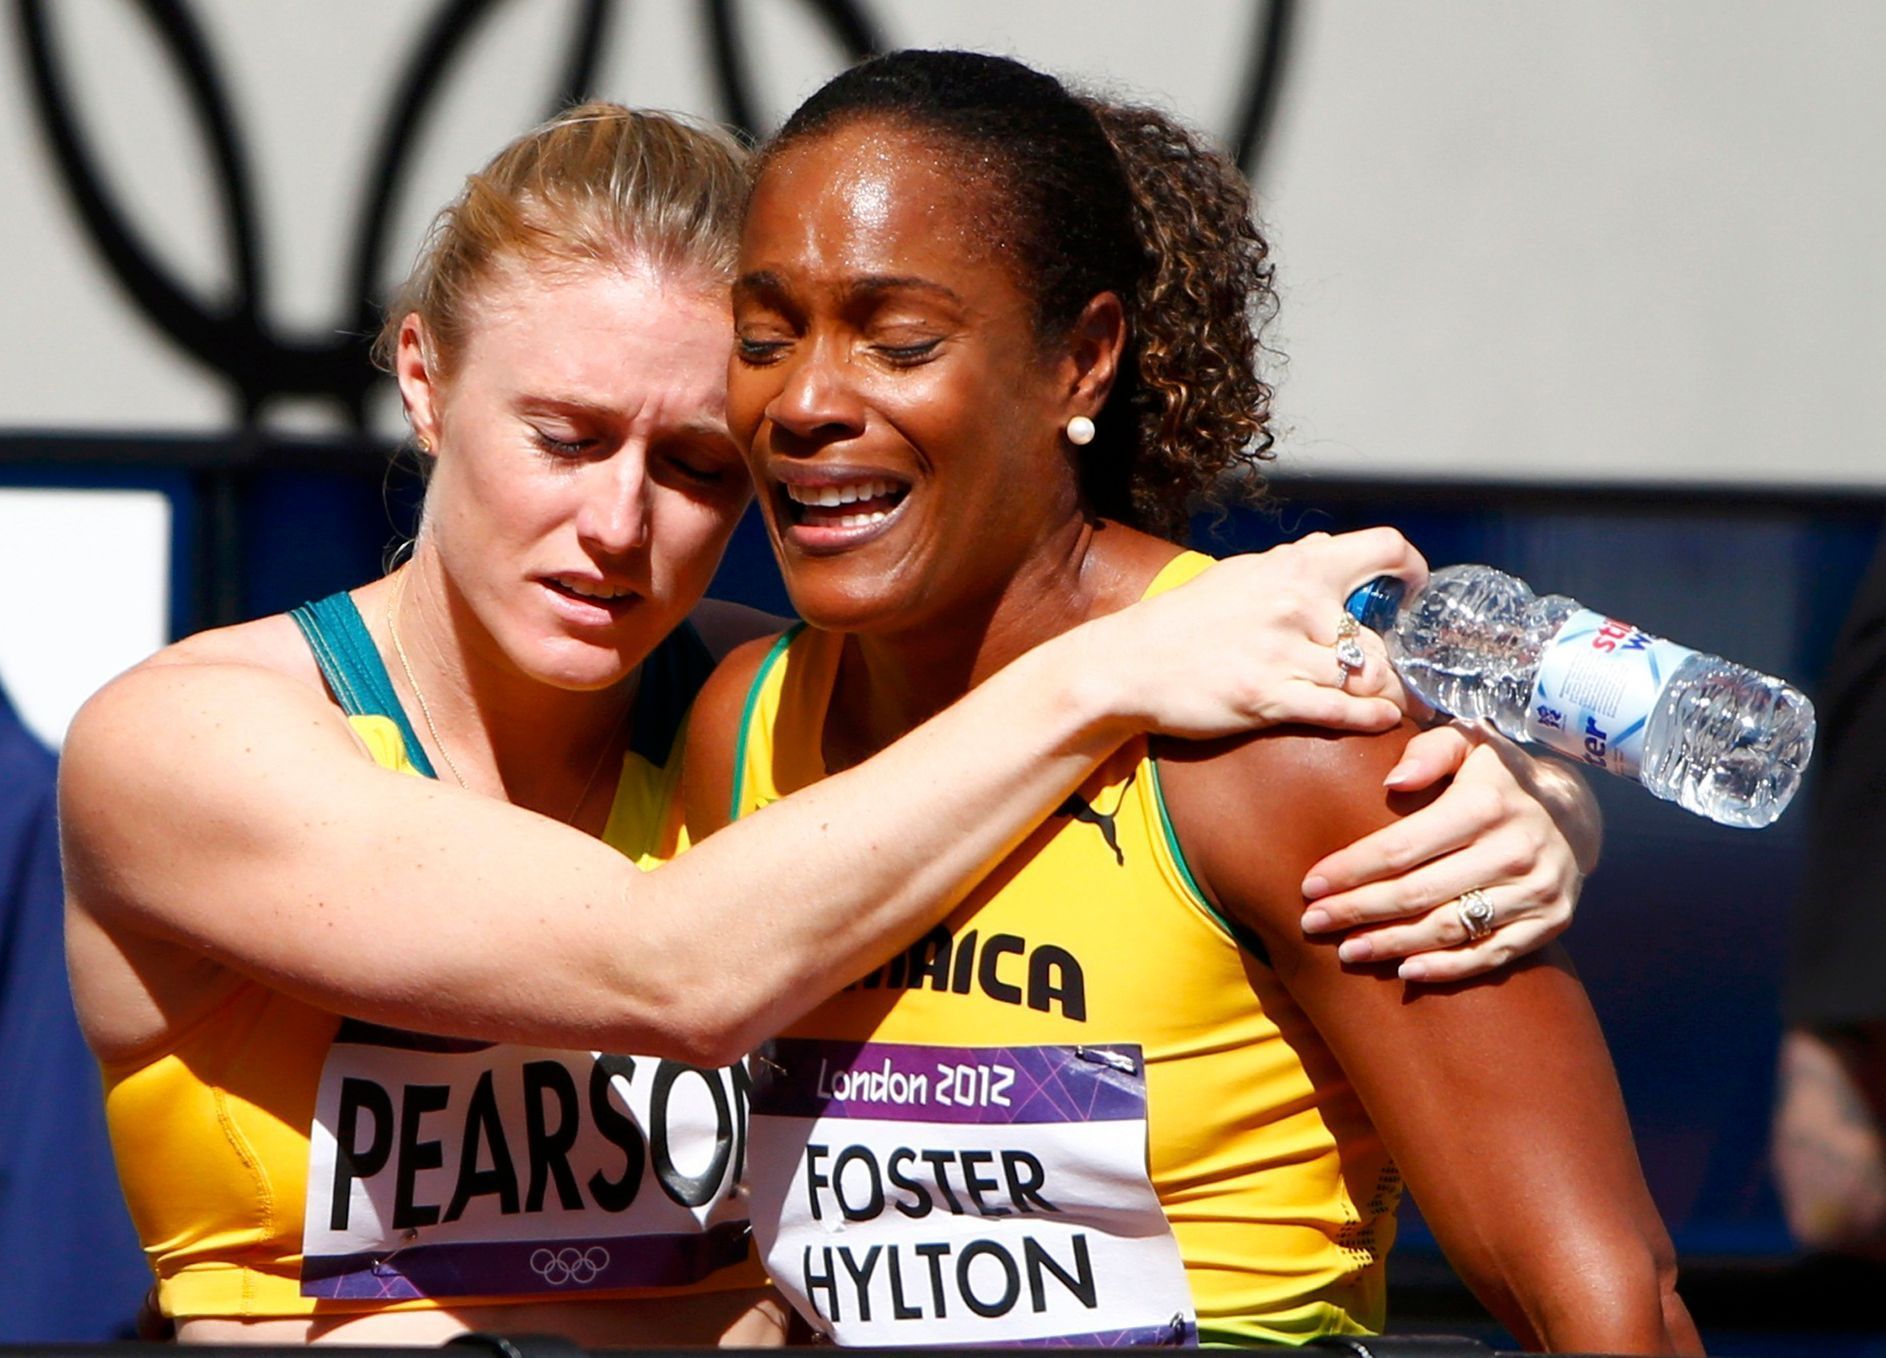 Fosterovou utěšuje na olympijských hrách Pearsonová